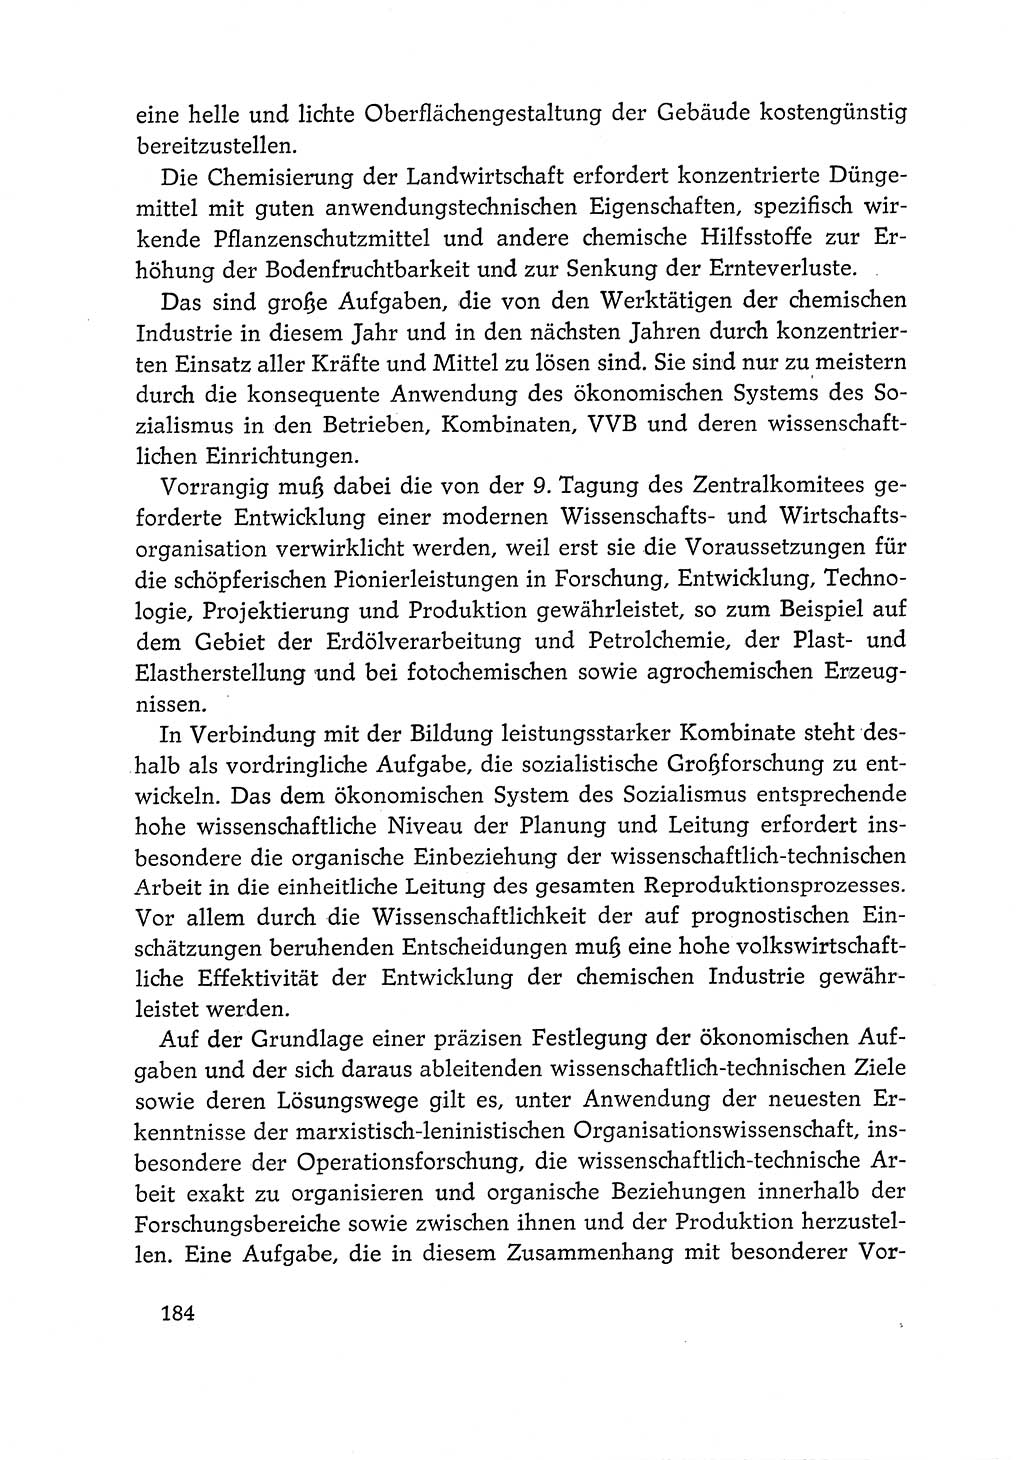 Dokumente der Sozialistischen Einheitspartei Deutschlands (SED) [Deutsche Demokratische Republik (DDR)] 1968-1969, Seite 184 (Dok. SED DDR 1968-1969, S. 184)